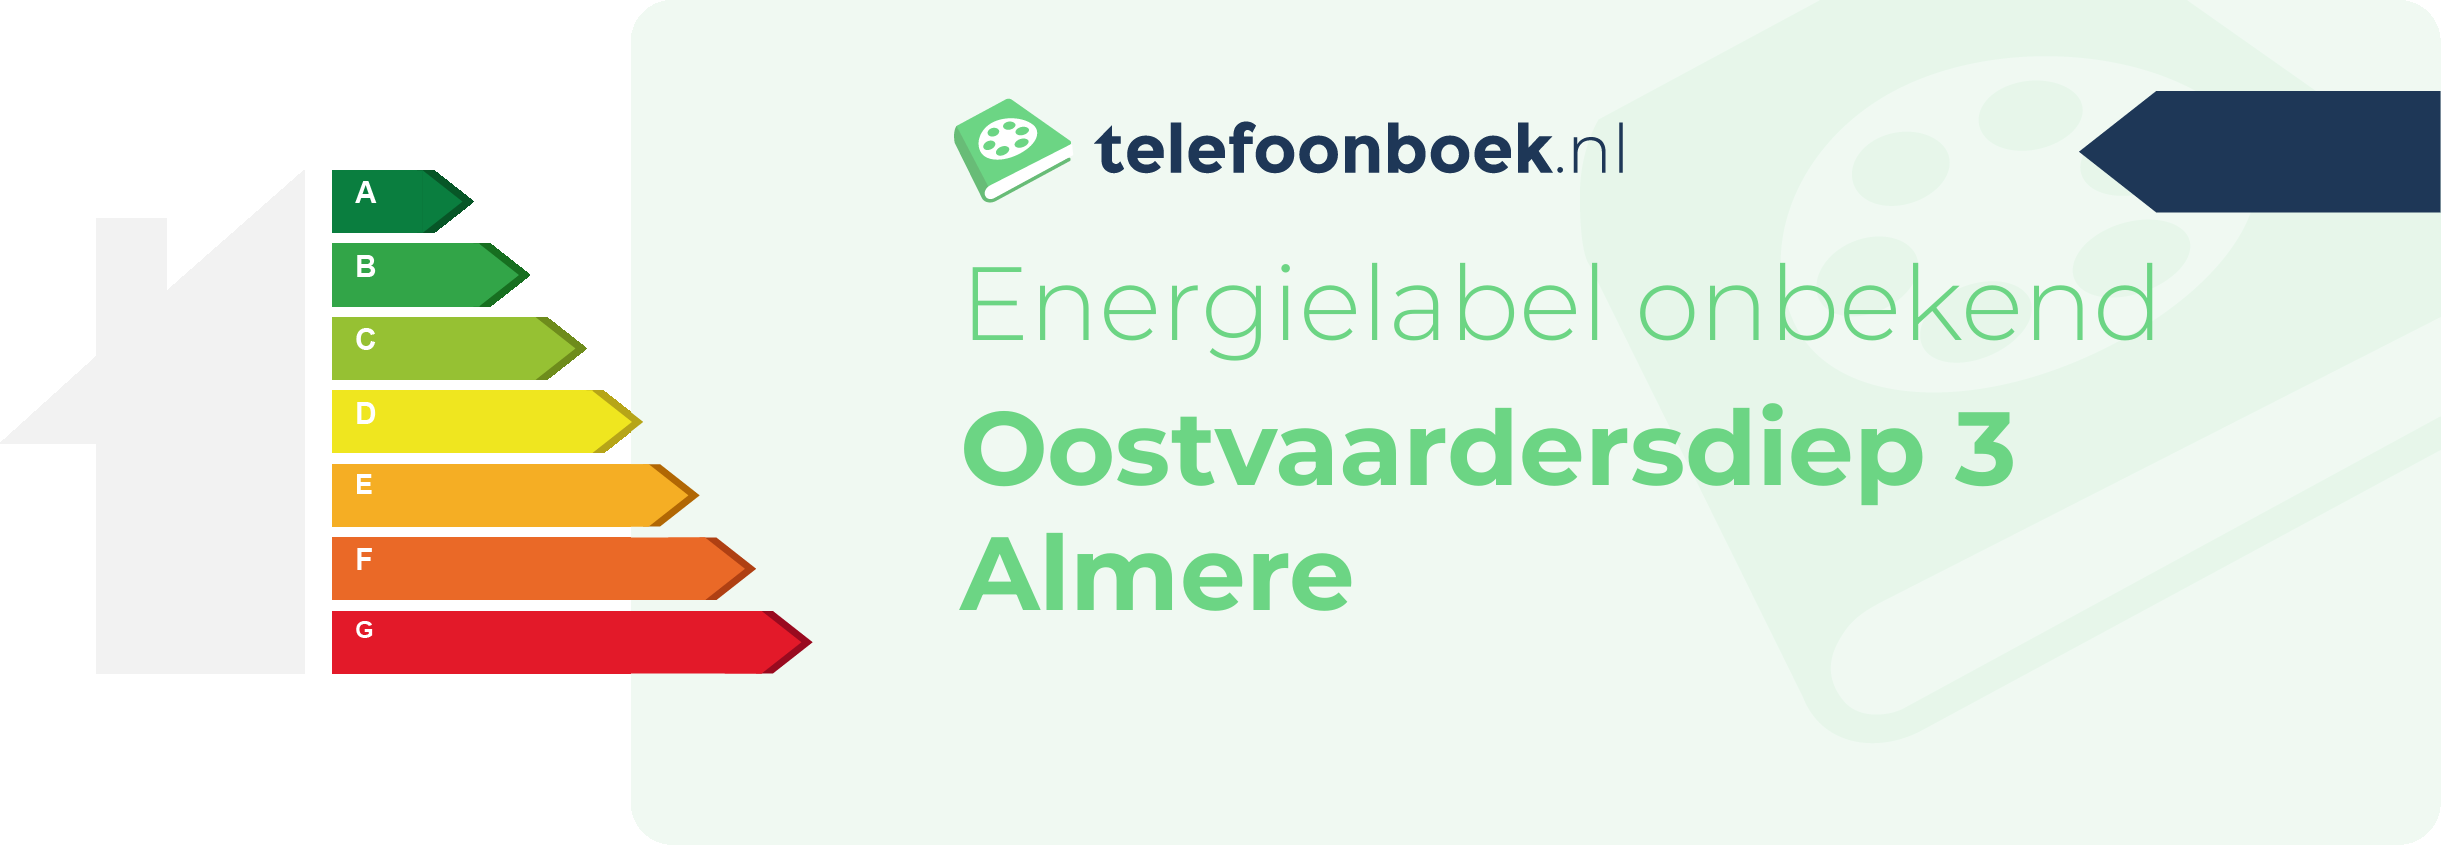 Energielabel Oostvaardersdiep 3 Almere